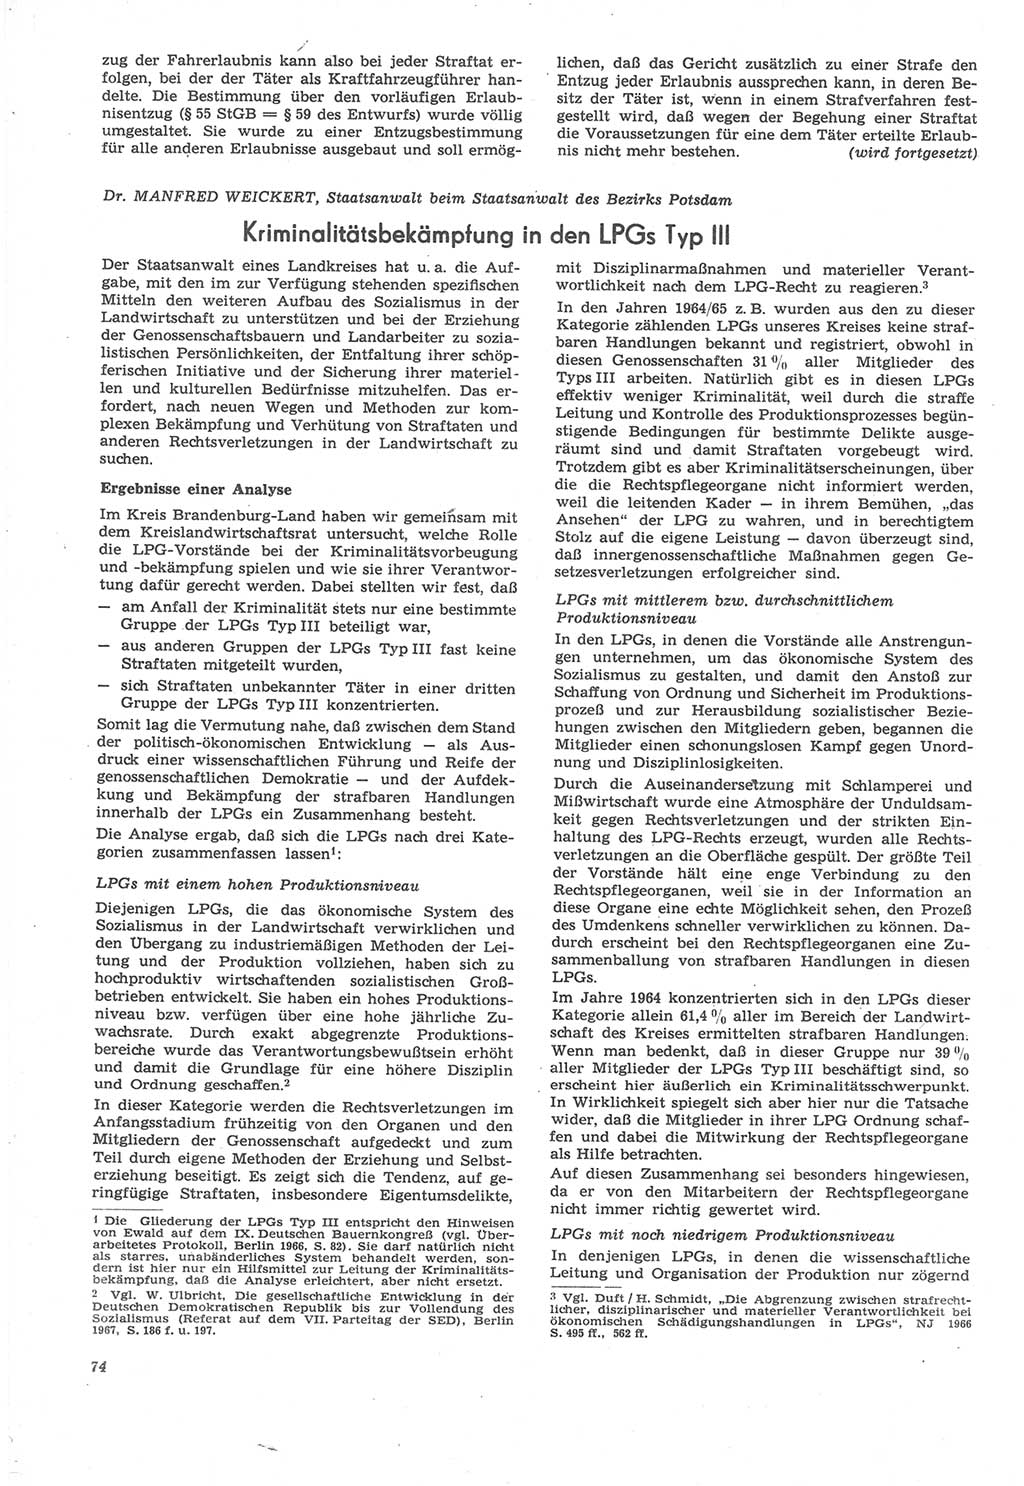 Neue Justiz (NJ), Zeitschrift für Recht und Rechtswissenschaft [Deutsche Demokratische Republik (DDR)], 22. Jahrgang 1968, Seite 74 (NJ DDR 1968, S. 74)